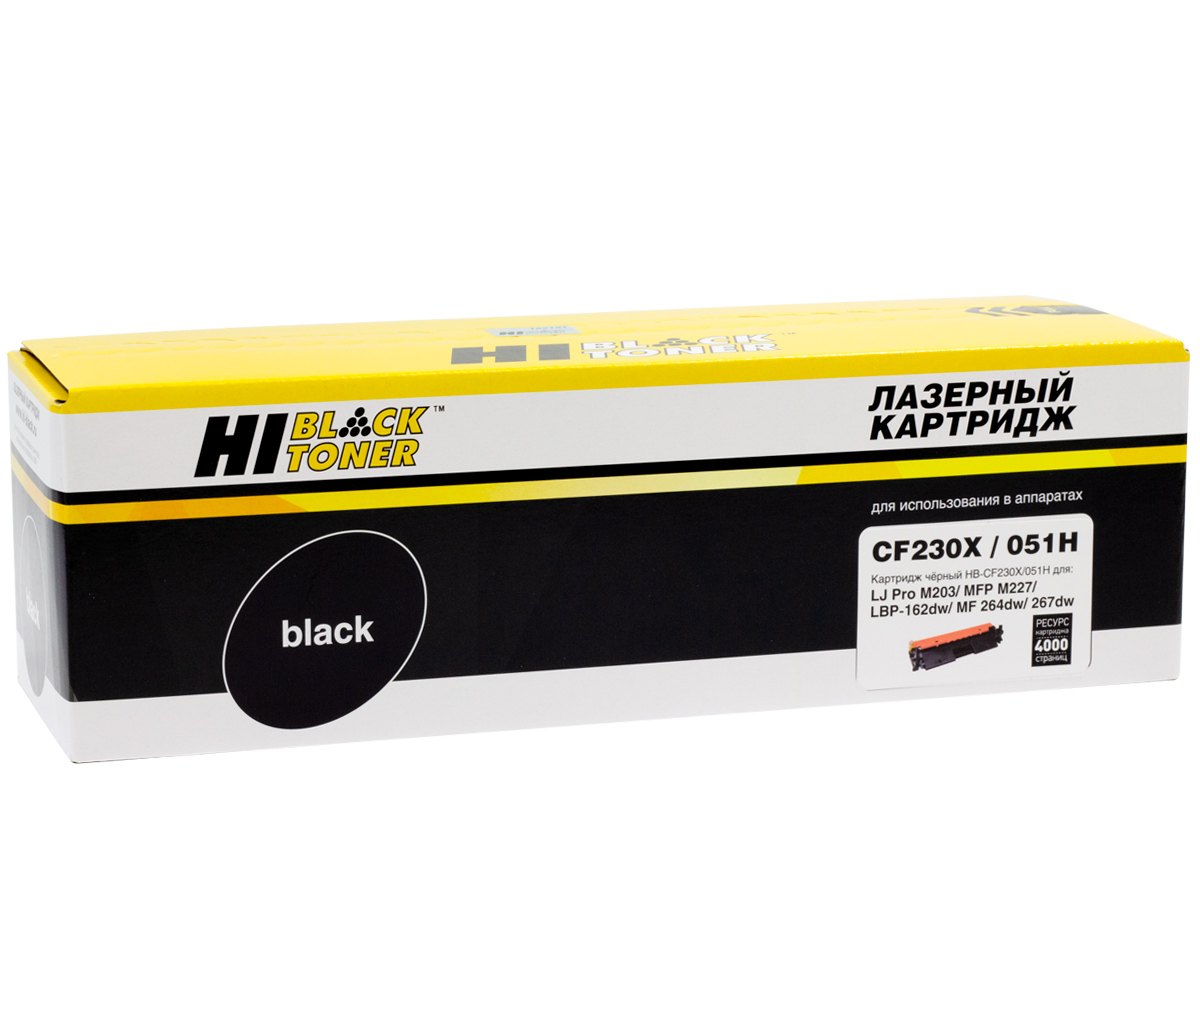 Тонер-картридж Hi-Black (HB-CF230X/051H) для HP LJ ProM203/MFP M227/LBP162dw/MF 264dw/267, 4K с/ч